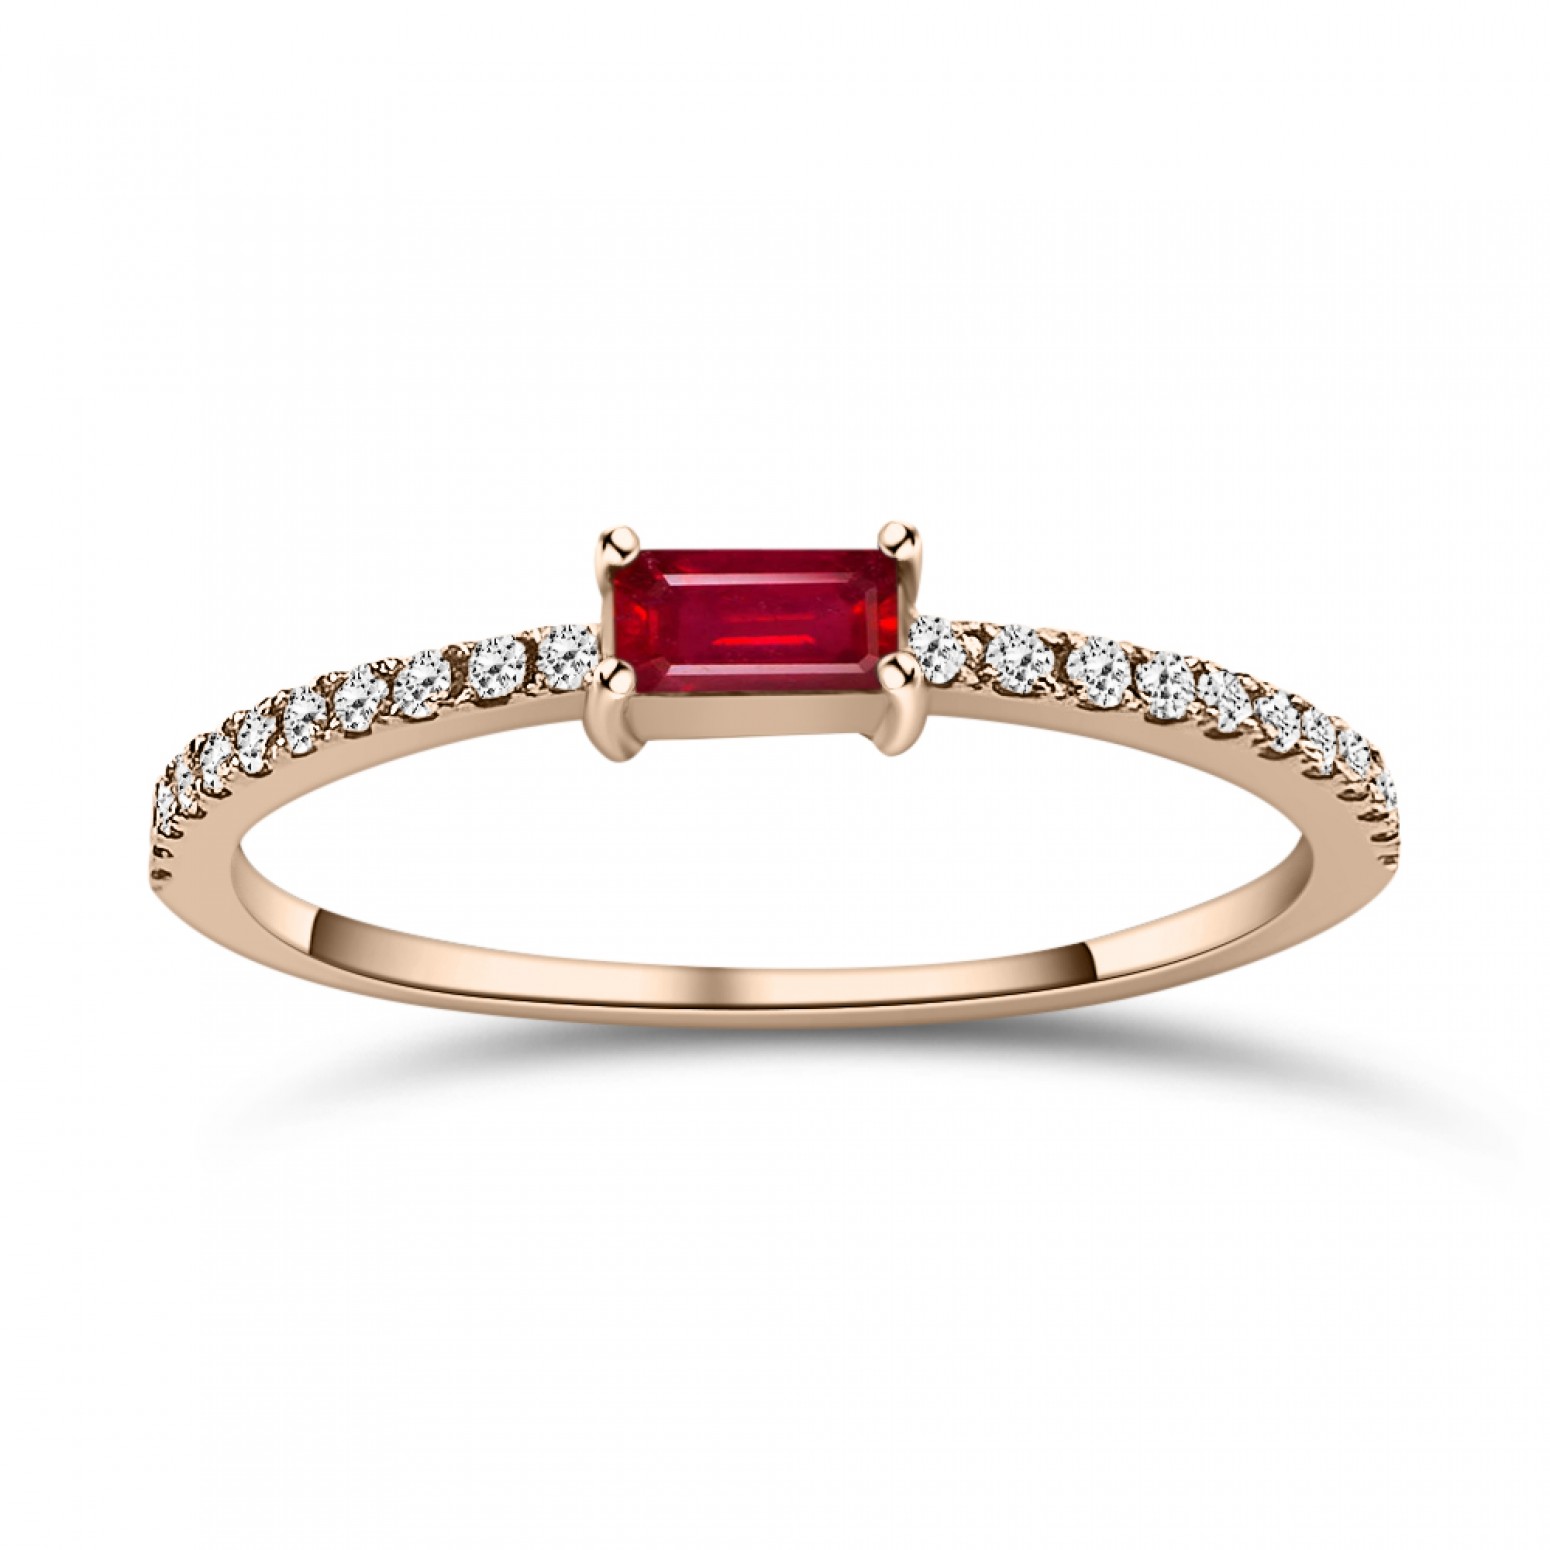 Μονόπετρο δαχτυλίδι Κ18 ροζ χρυσό με ρουμπίνι 0.14ct και διαμάντια 0.09ct VS1, H da4187 ΔΑΧΤΥΛΙΔΙΑ ΑΡΡΑΒΩΝΑ Κοσμηματα - chrilia.gr